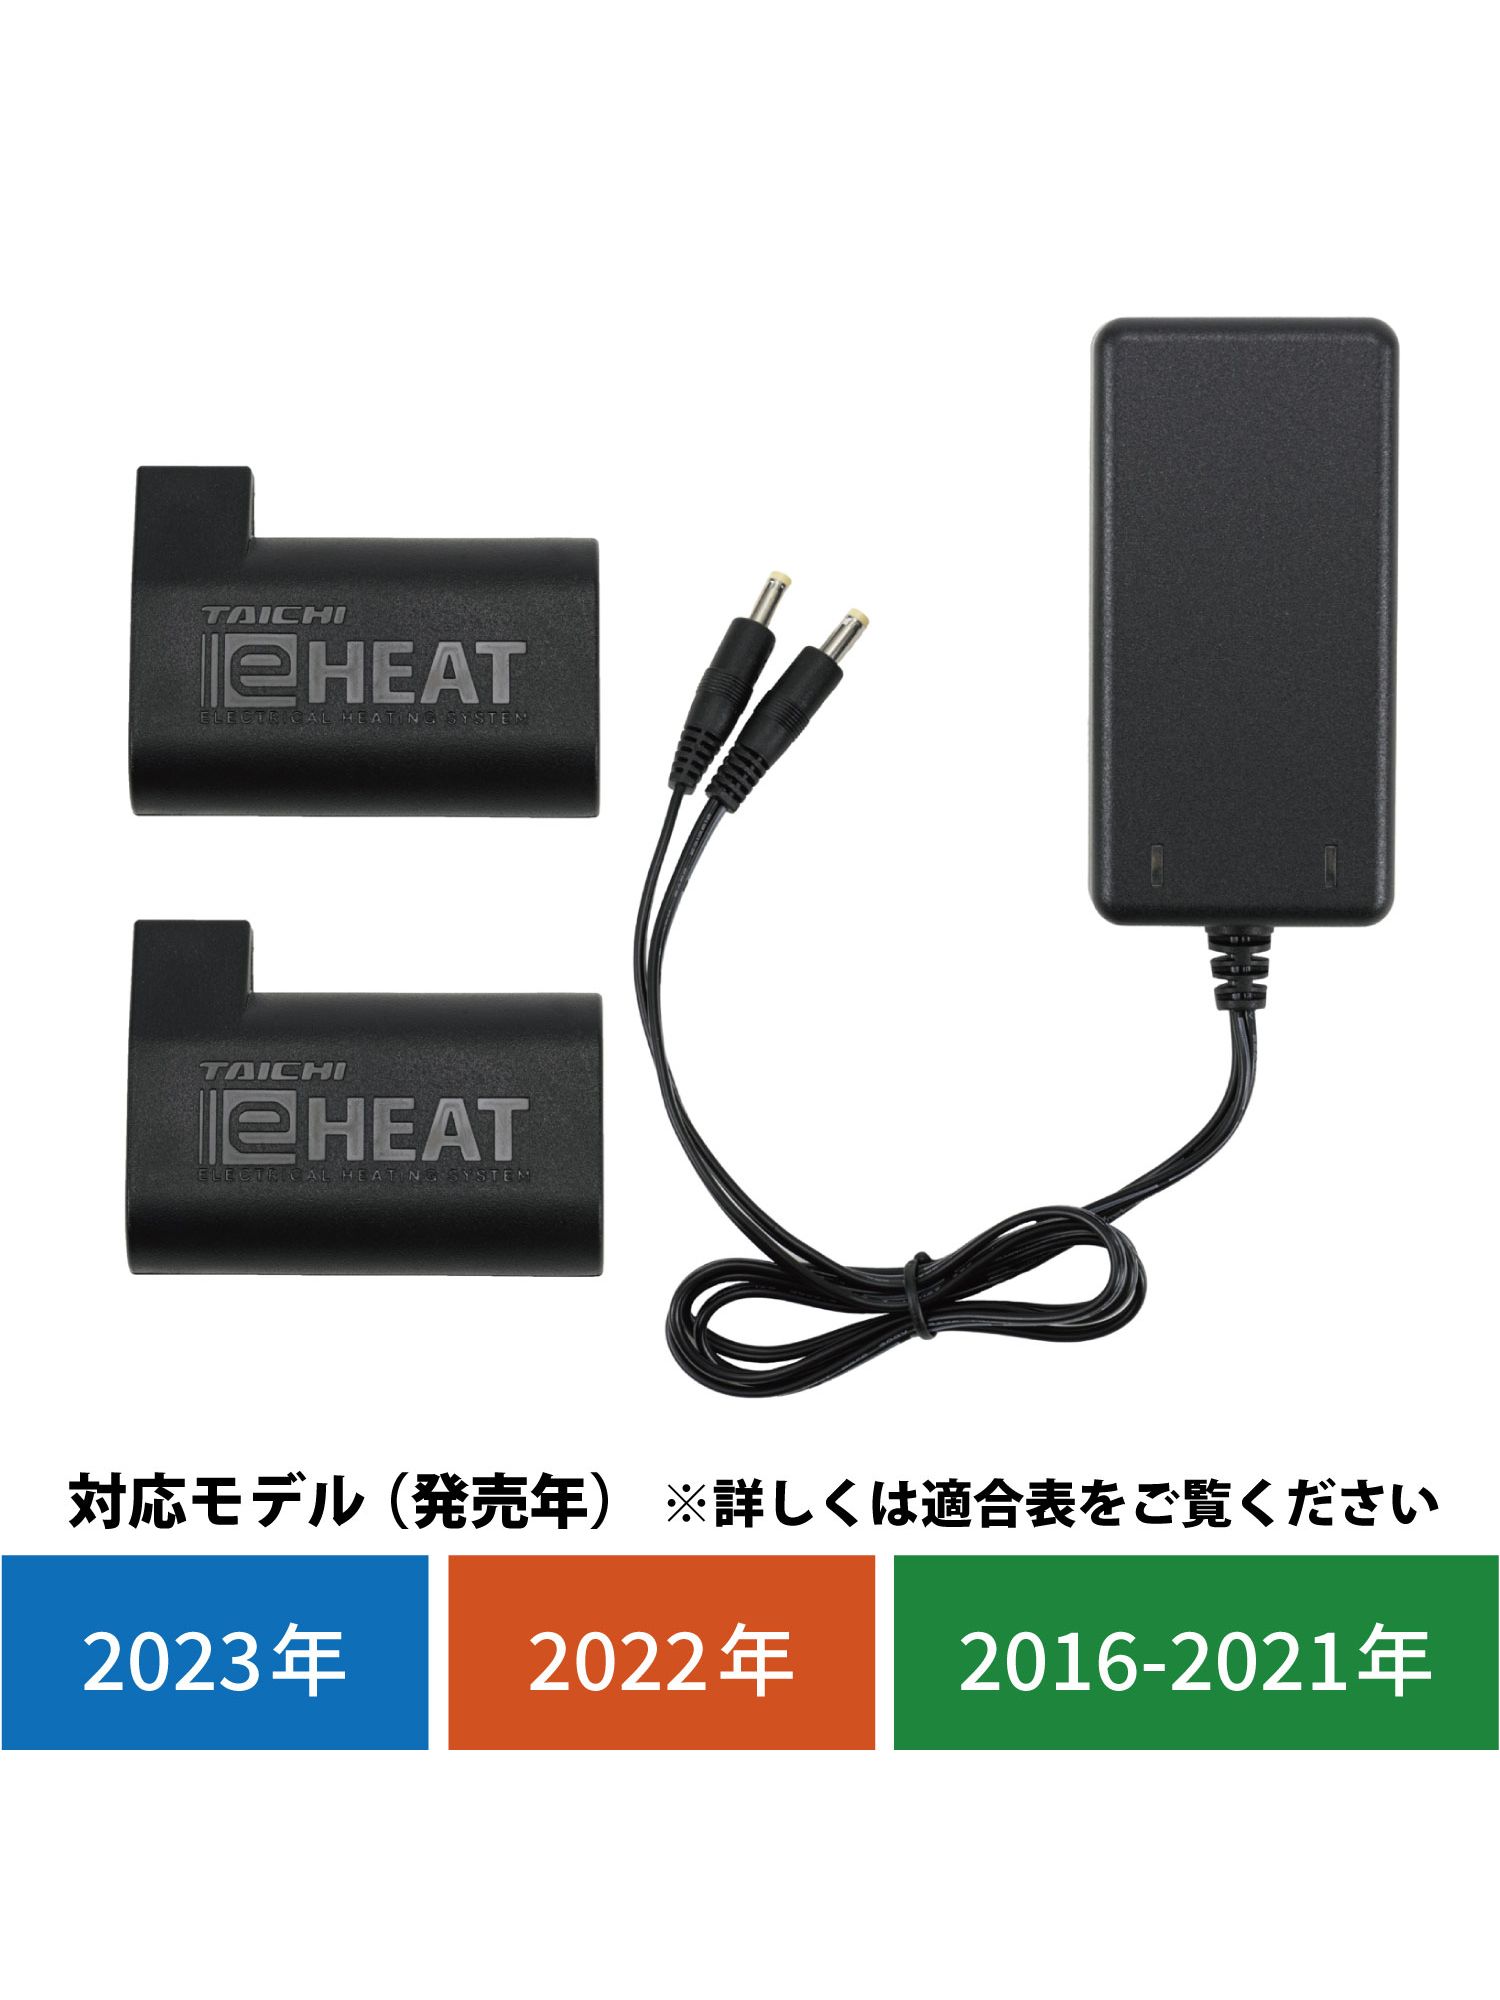 e-HEAT 7.2V充電器&バッテリーセット